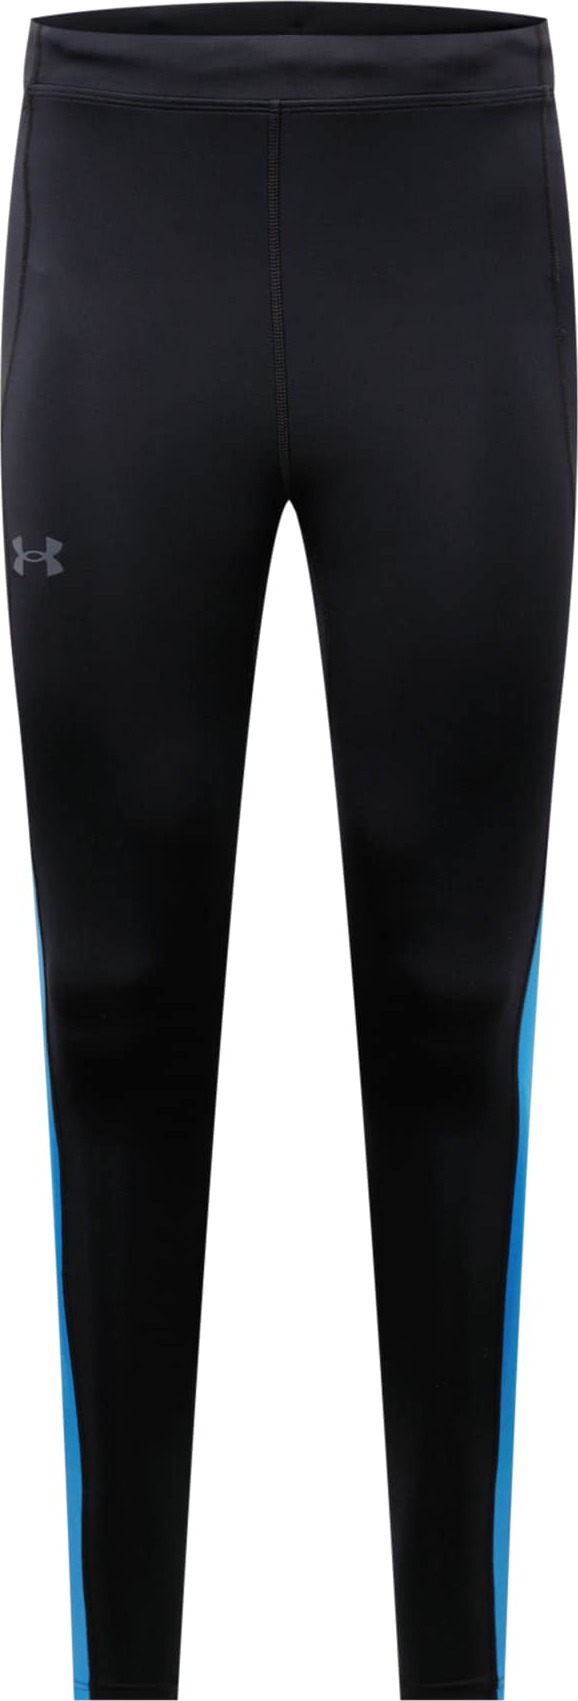 UNDER ARMOUR Sportovní kalhoty 'Fly Fast' černá / modrá / bílá / šedá